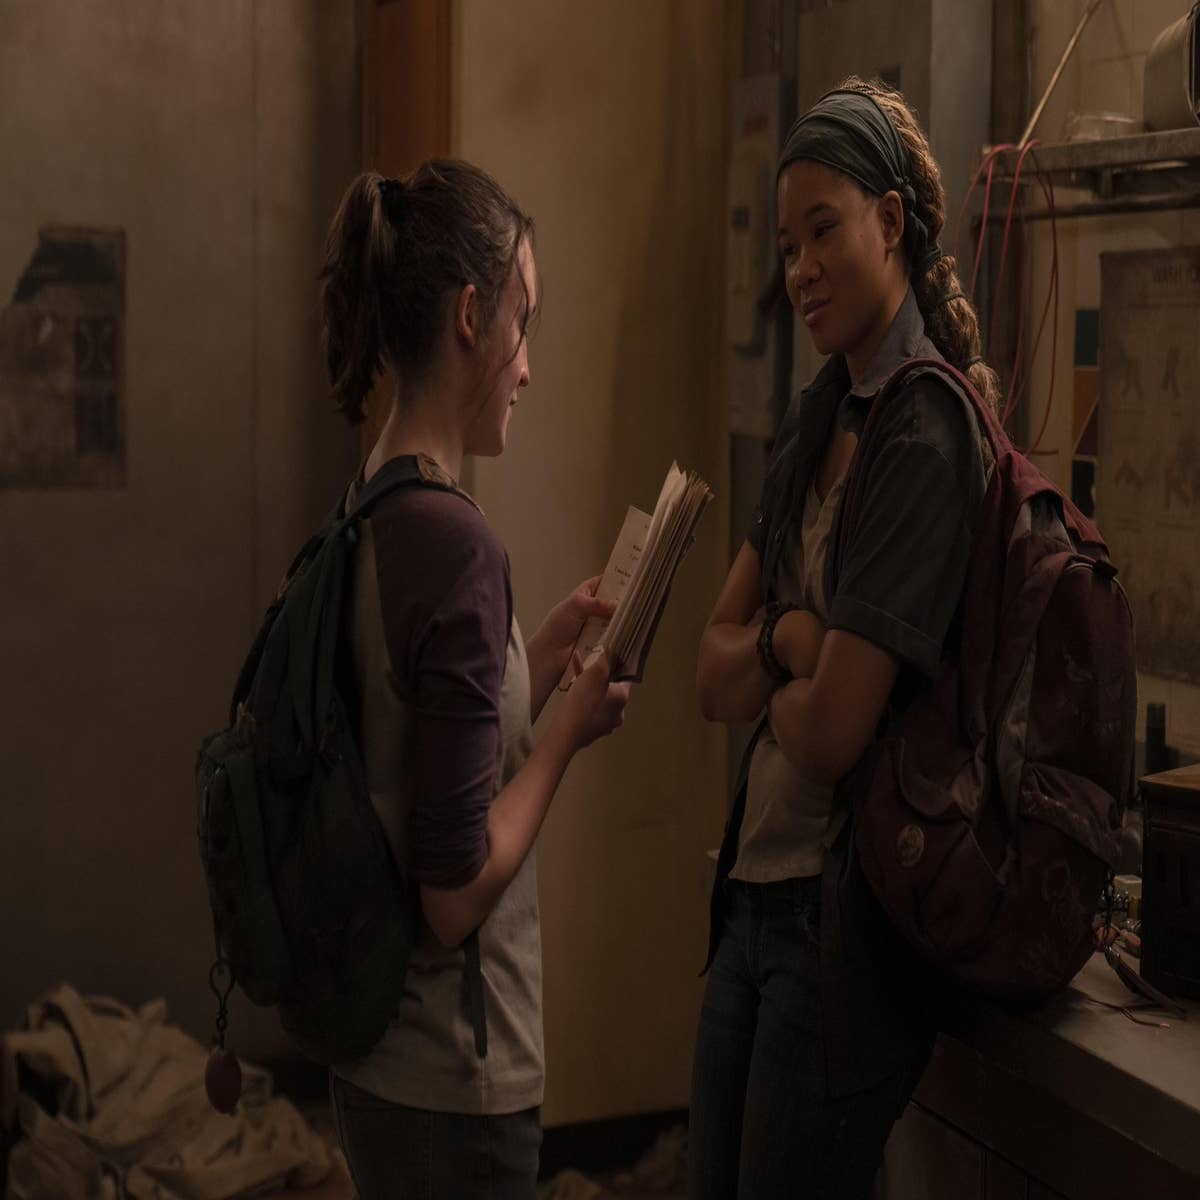 The Last of Us: quem é Ellie no jogo e na série da HBO Max - Olhar Digital